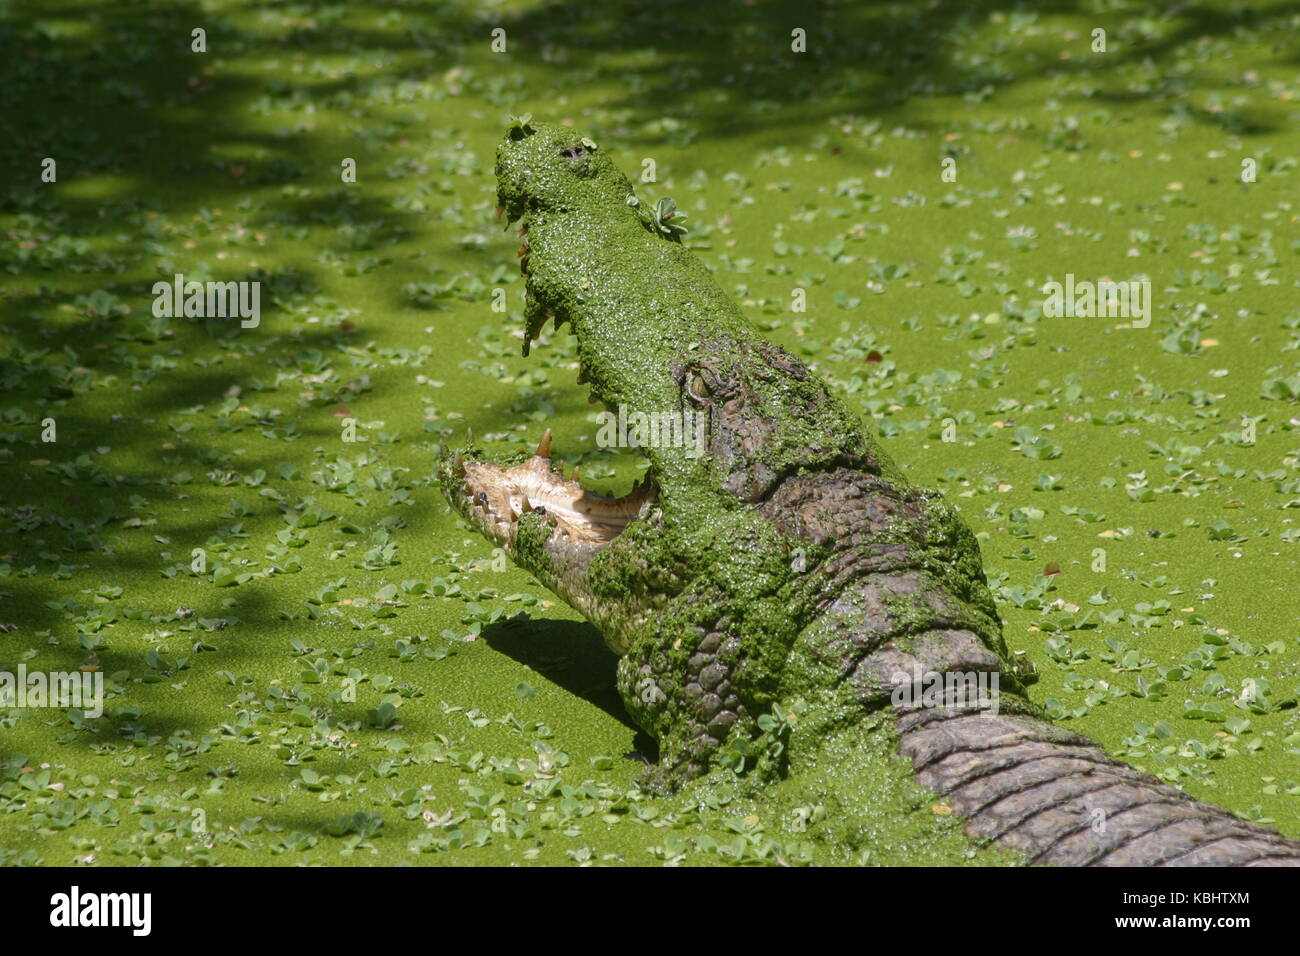 Krokodil mit offenem Maul - coccodrillo con bocca aperta Foto Stock